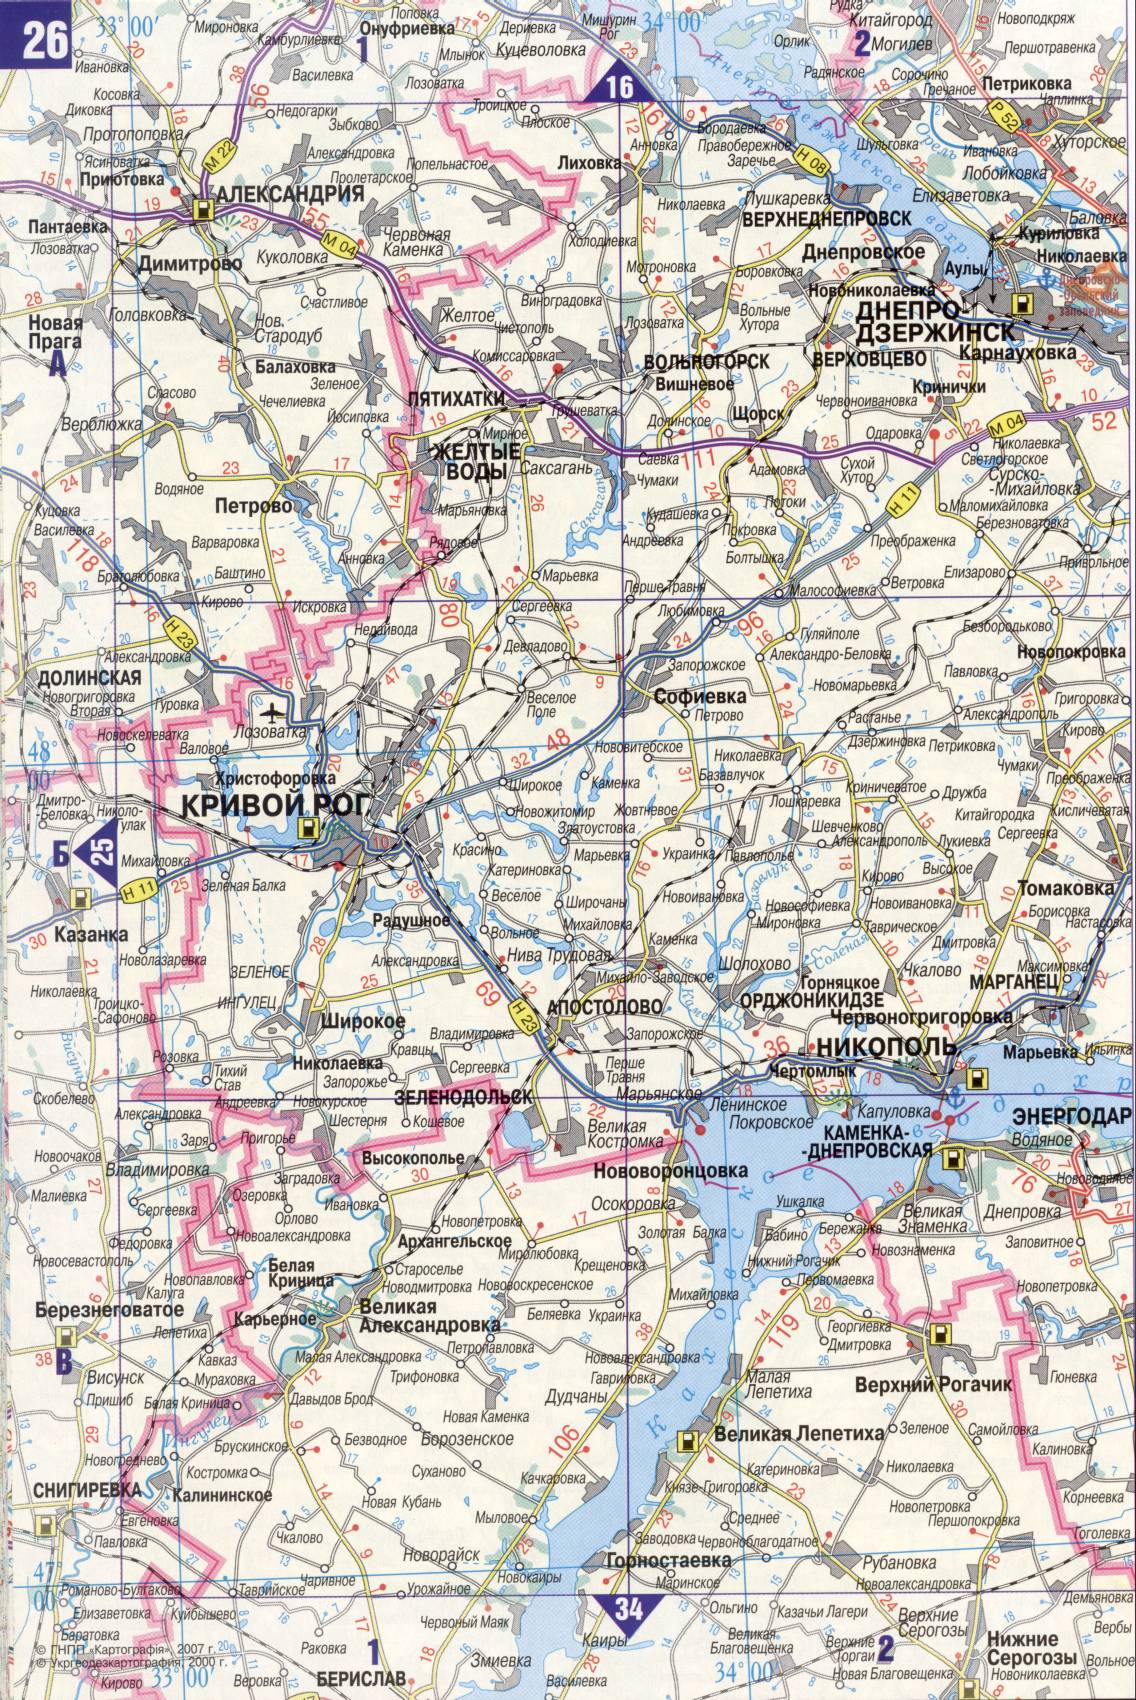 Карта Украины. Подробная карта дорог Украина из автомобильног атласа. скачать бесплатно, G2